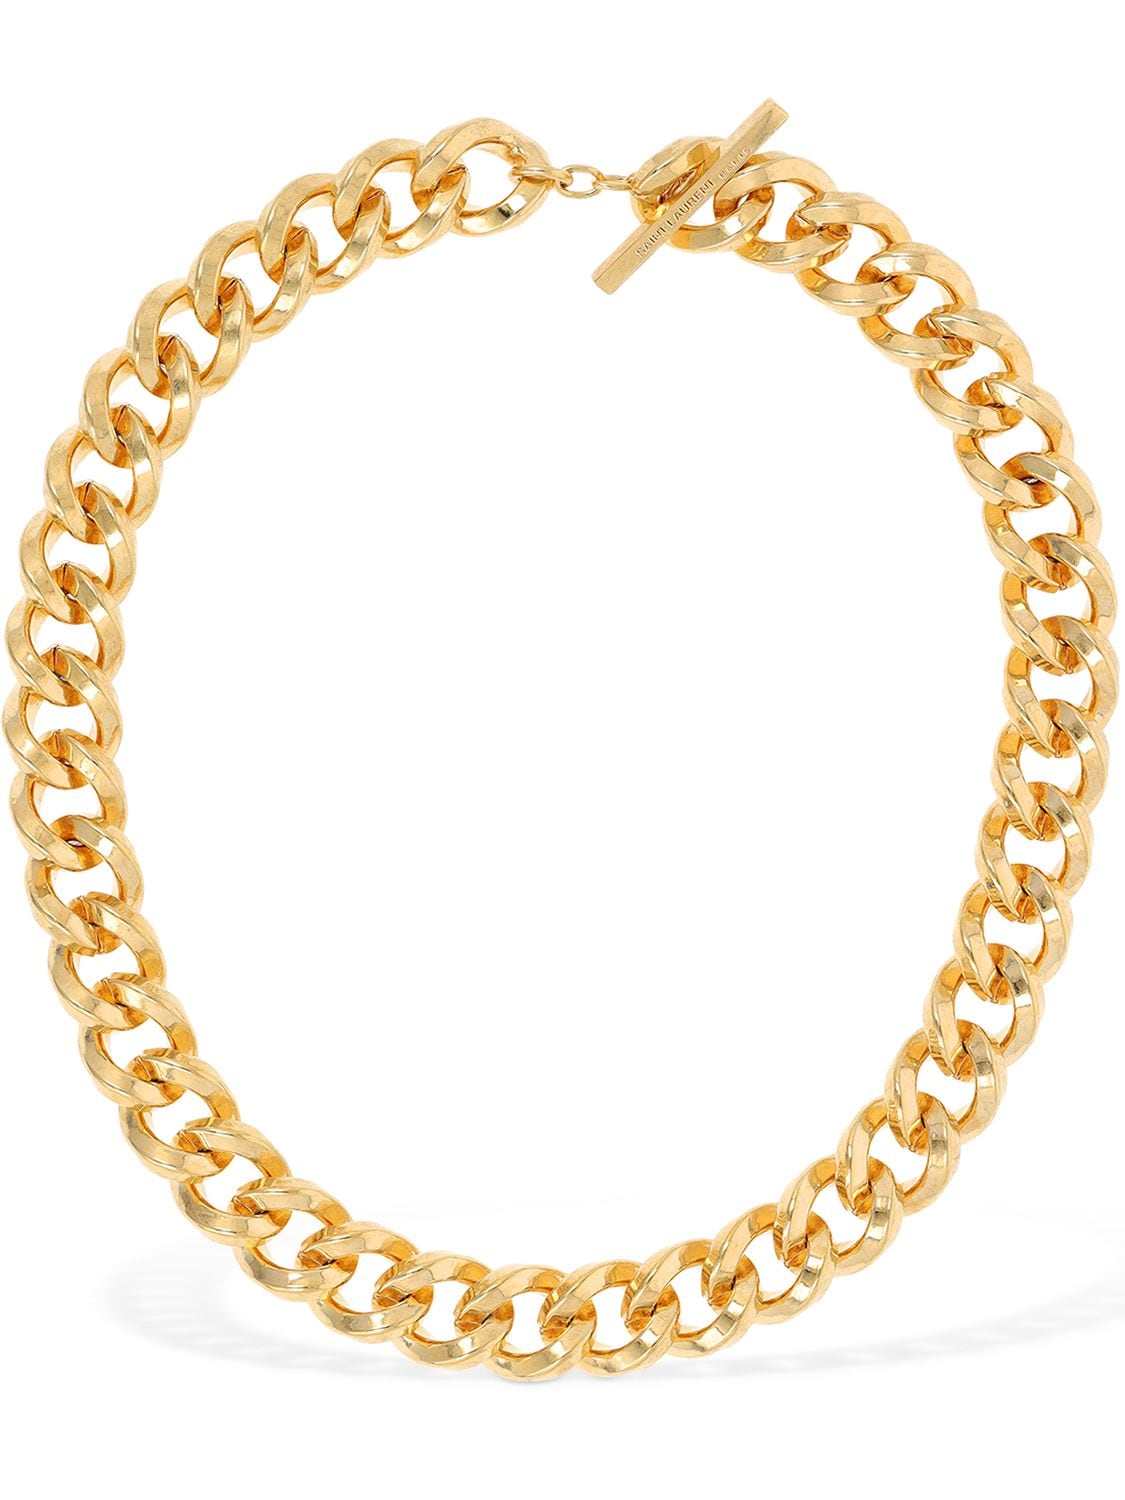 SAINT LAURENT Large Chain Short Necklace